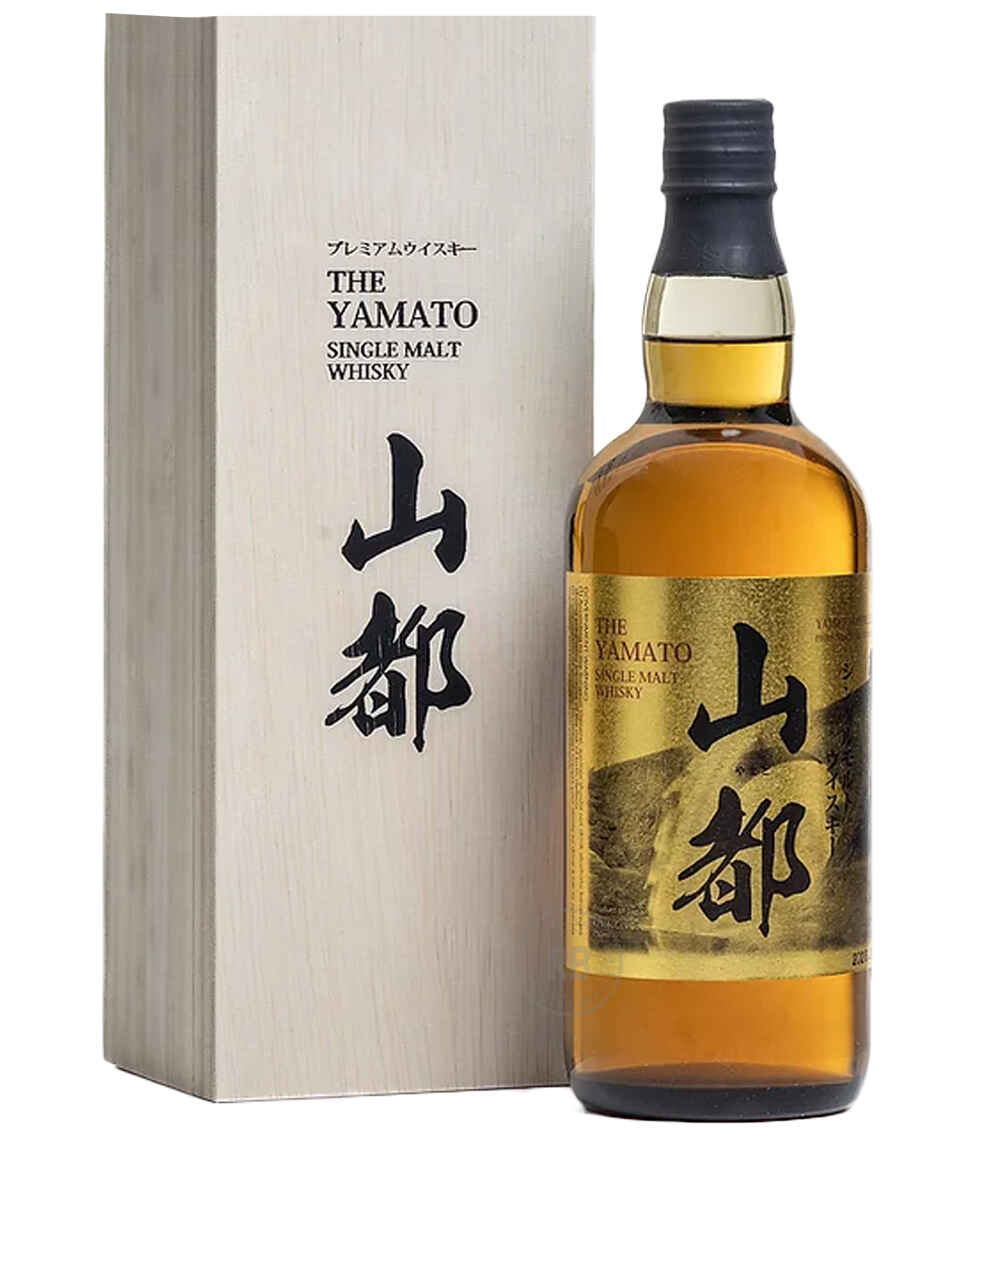 Yamato Single Malt Japanese Whisky